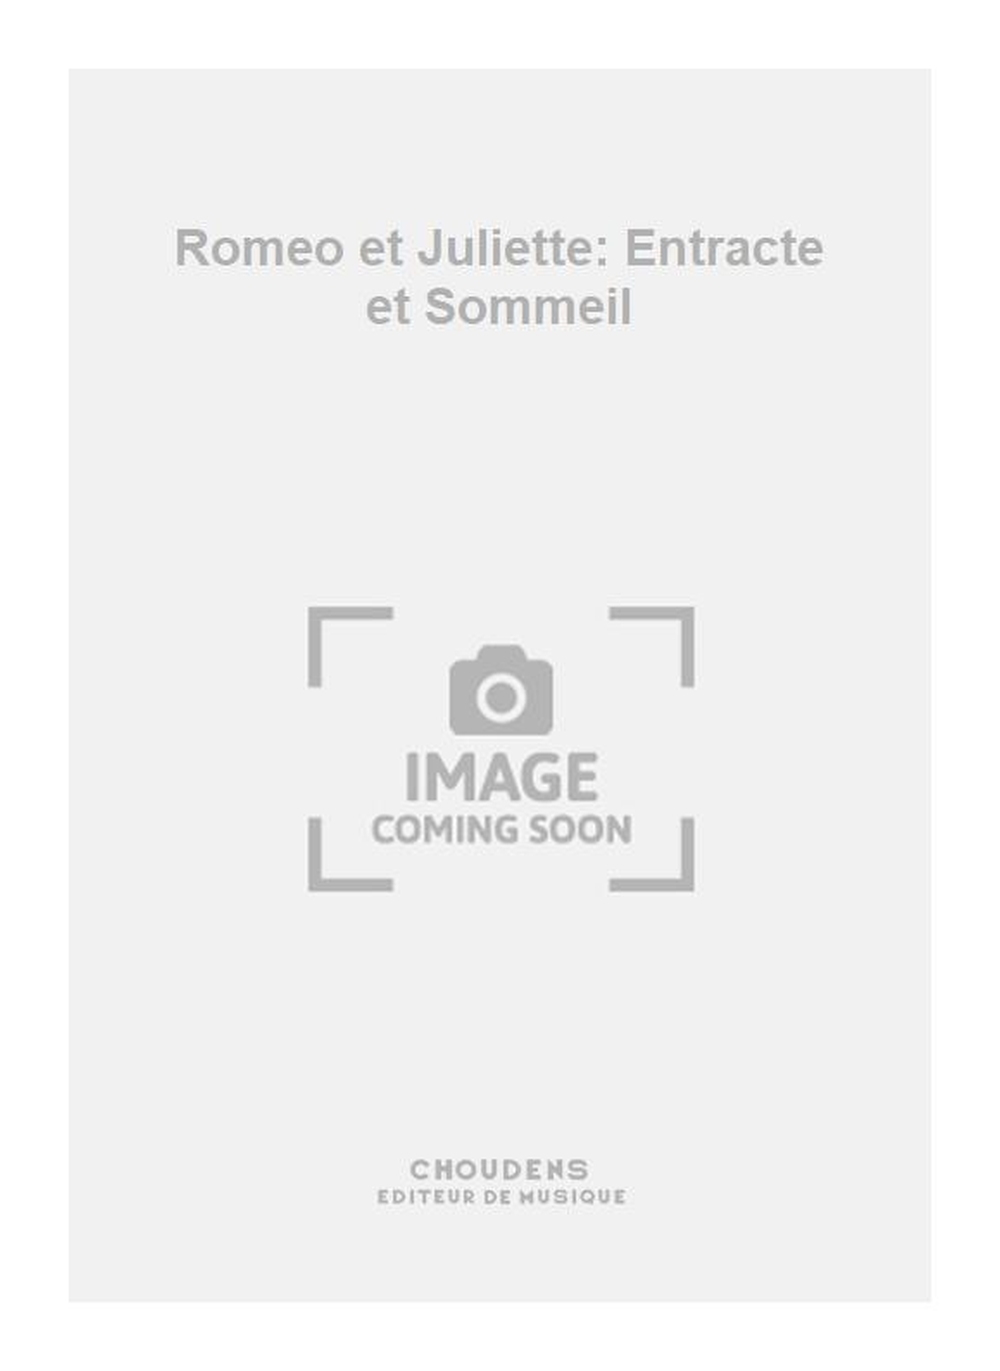 Charles Gounod: Romeo et Juliette: Entracte et Sommeil